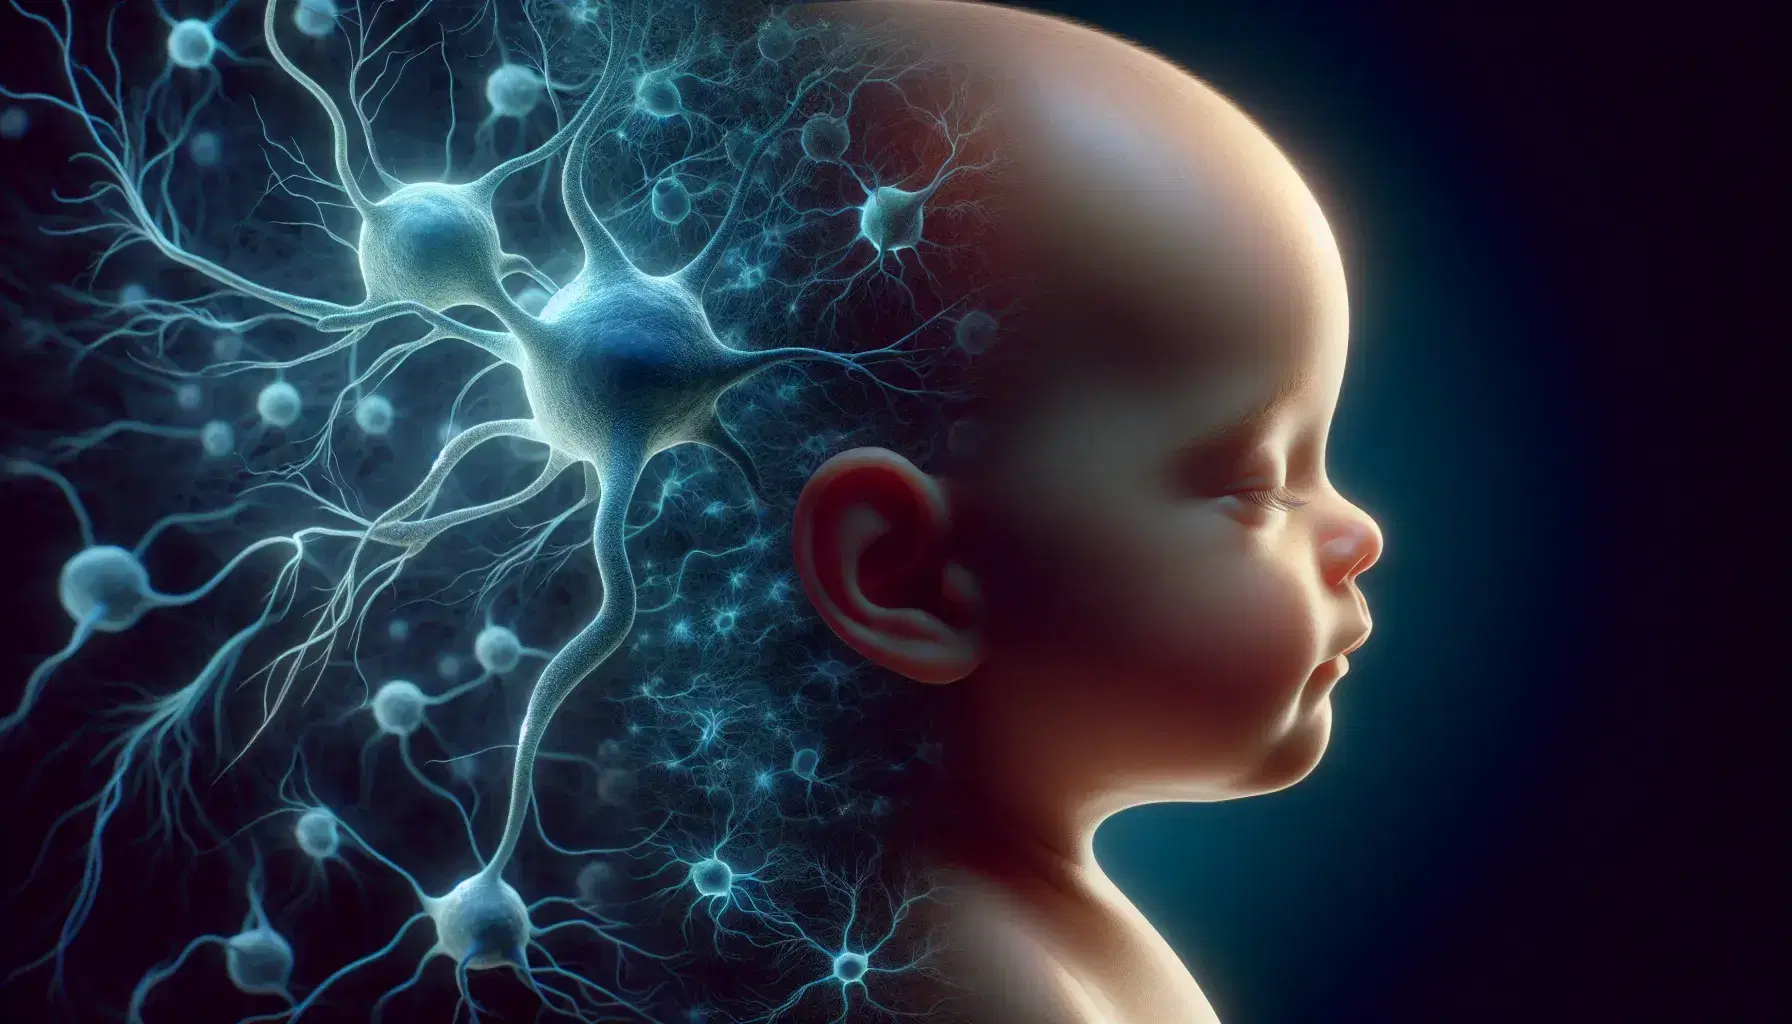 Cabeza de bebé y adulto en perfil con ojos cerrados sobre fondo de neuronas azules entrelazadas, simbolizando el desarrollo humano y cerebral.